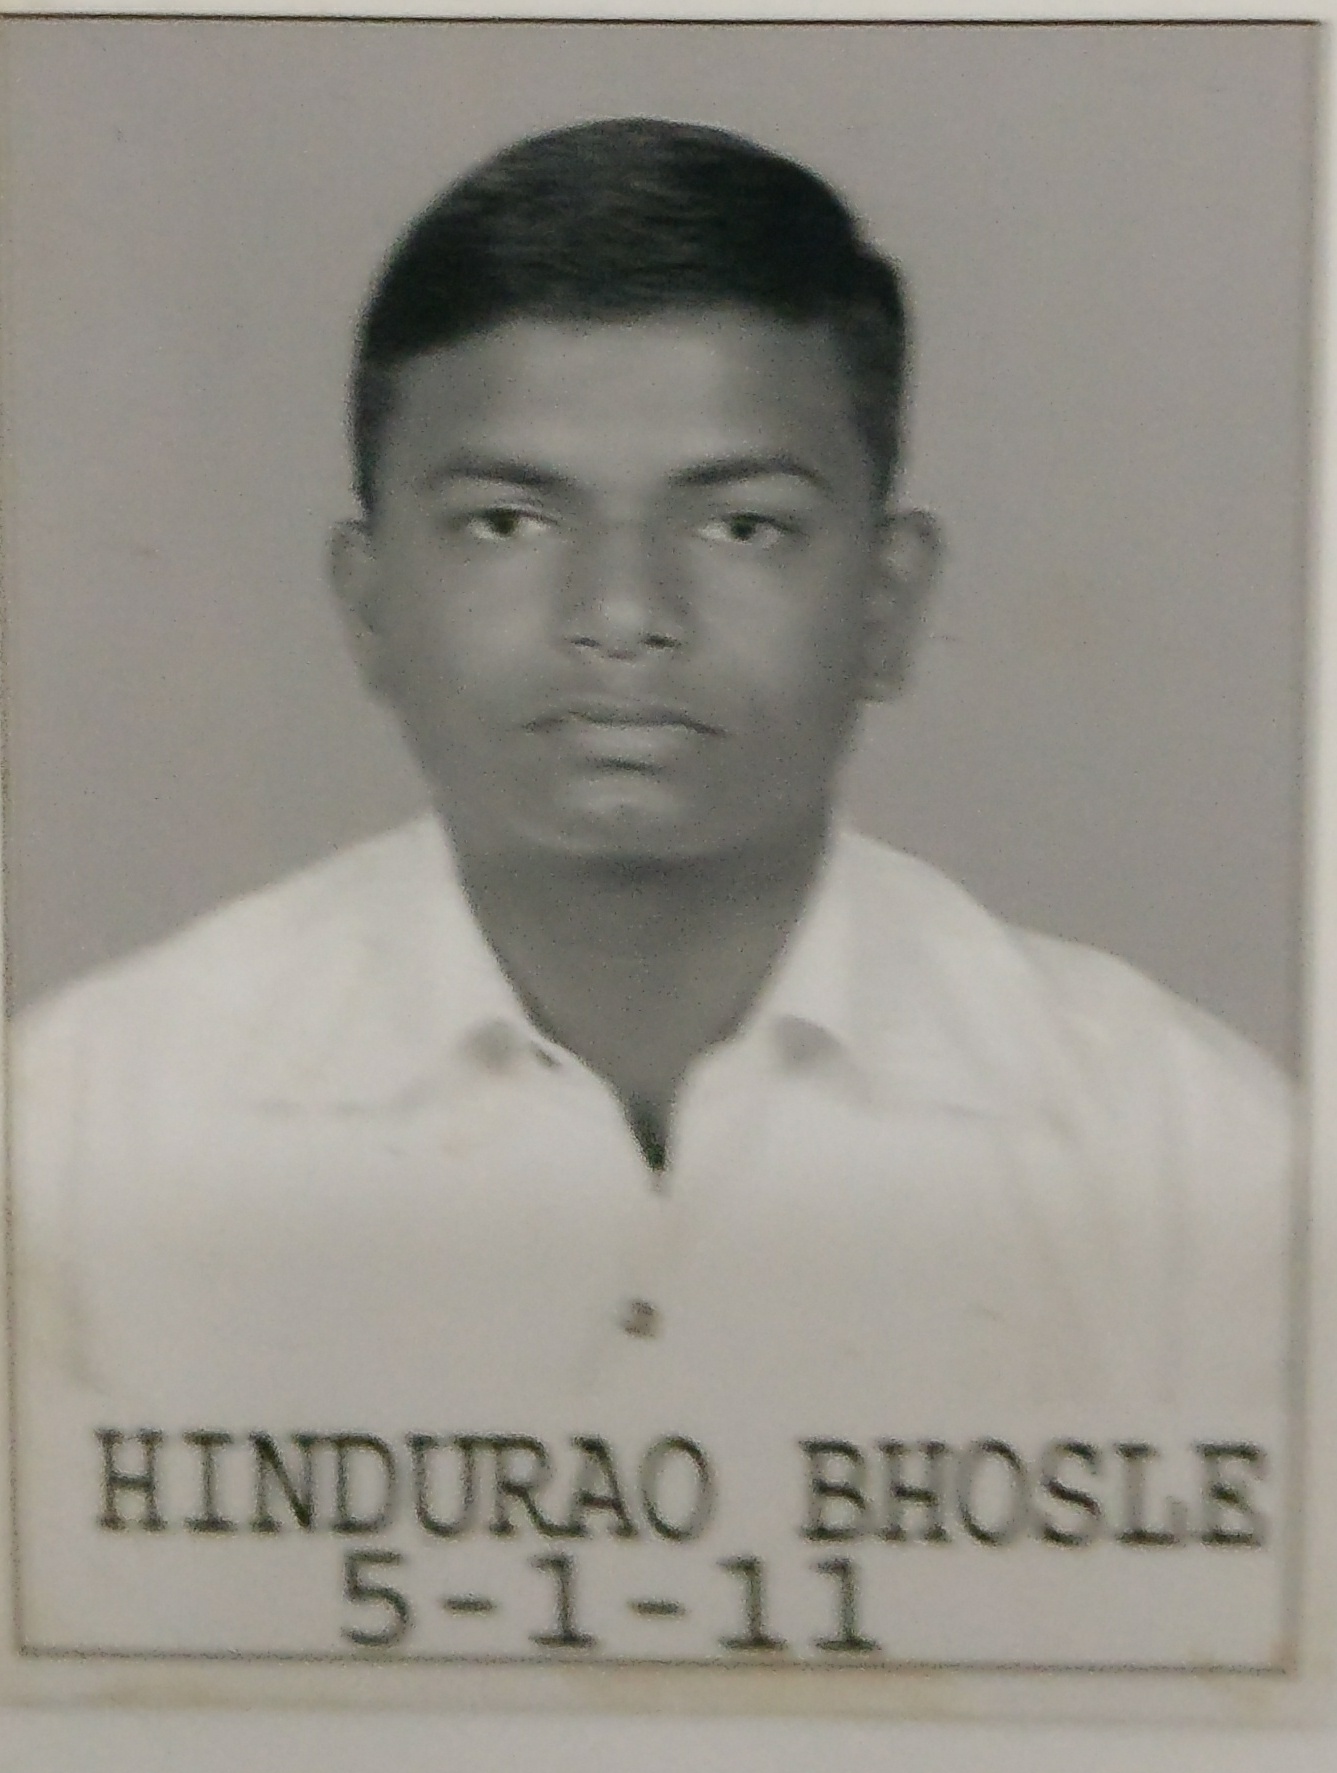 Hindurao Bhosle